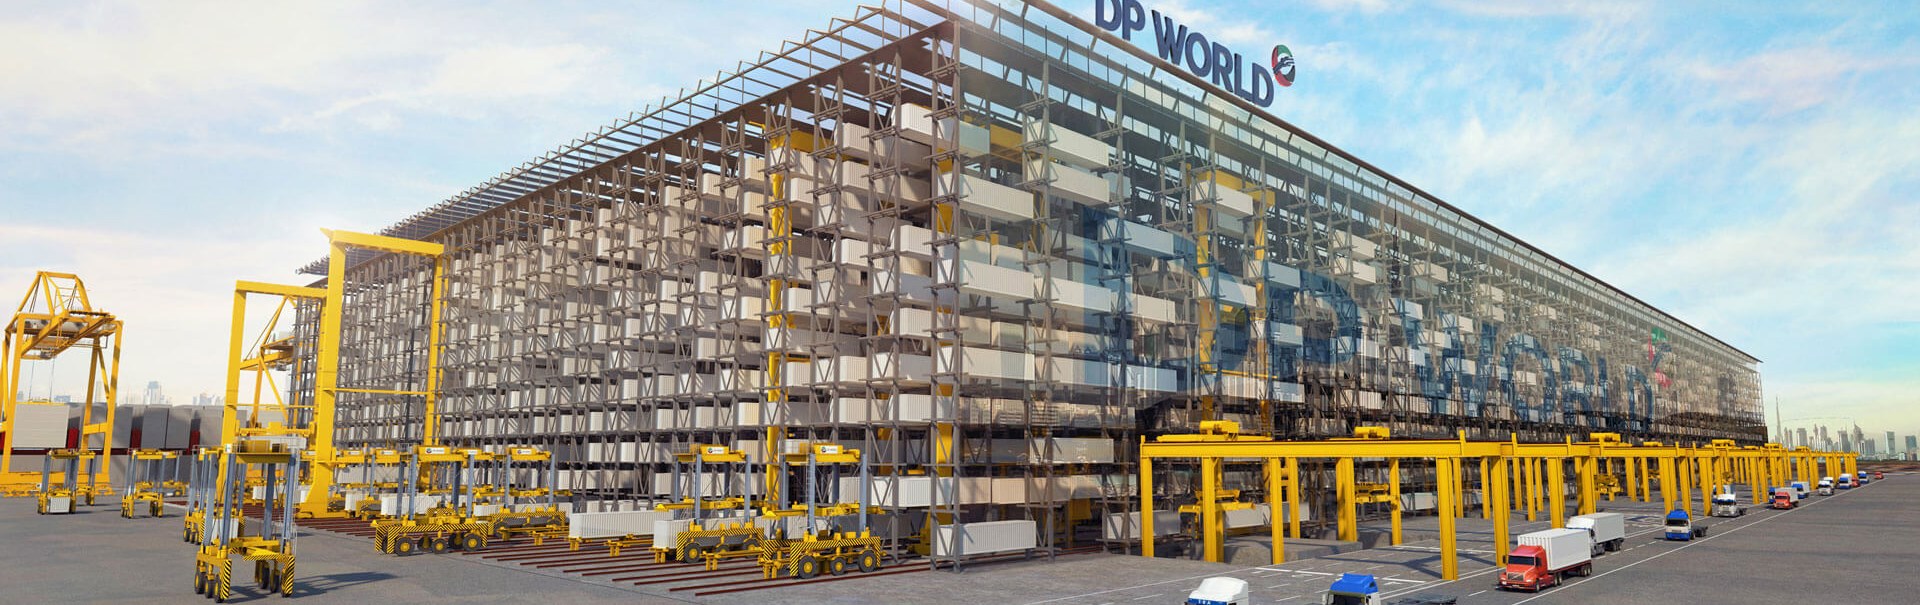 Hệ thống BoxBay với công nghệ bốc dỡ container tự động tại cảng DP World